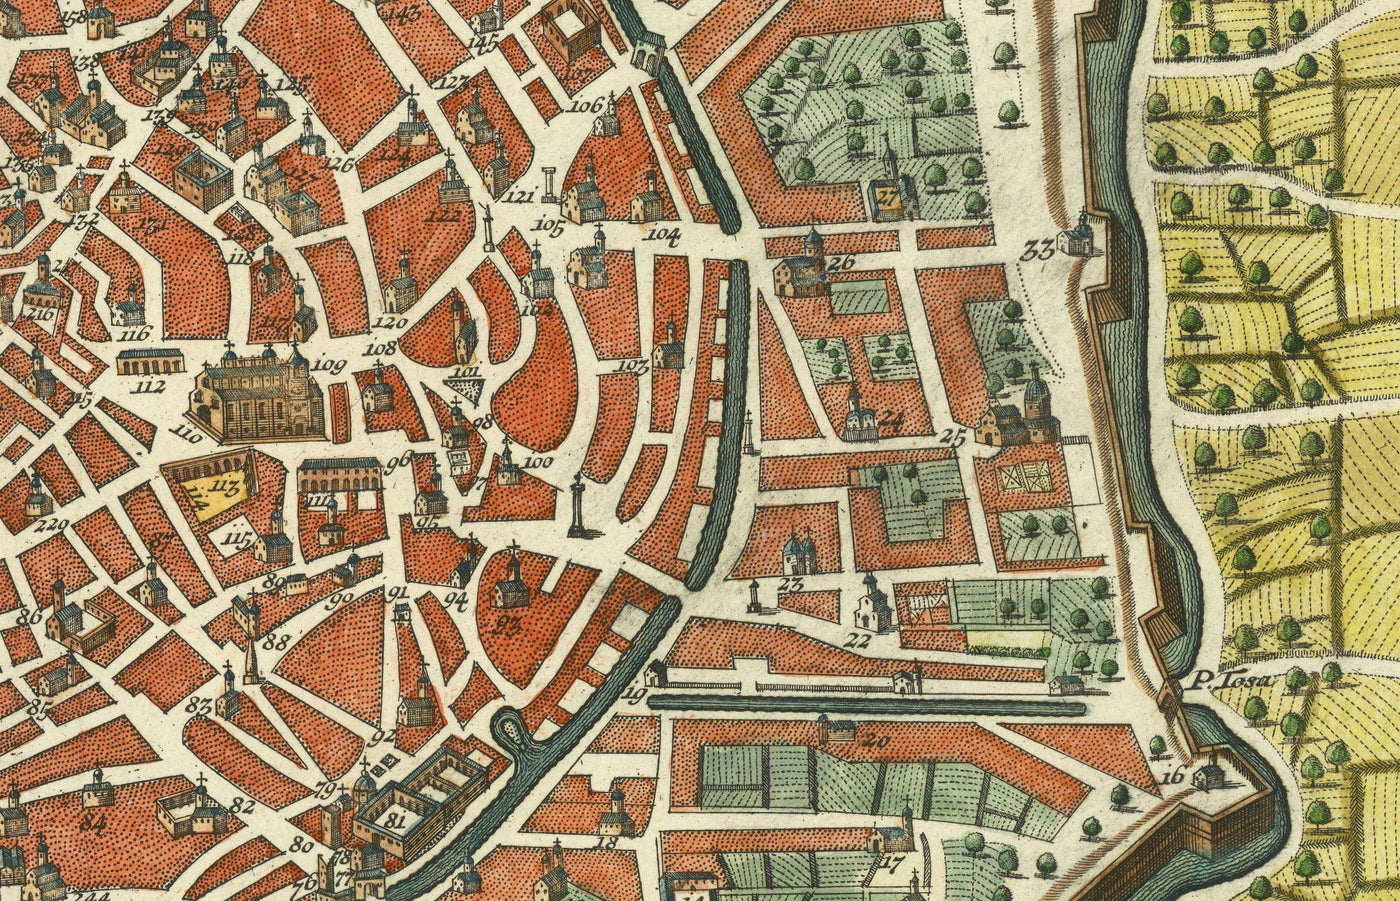 Old Map of Milan, Italy in 1730 by Seutter - San Carlo al Lazzaretto, Sforzesco Castle, Duomo, Basilica di Sant'Ambrogio, Pinacoteca di Brera